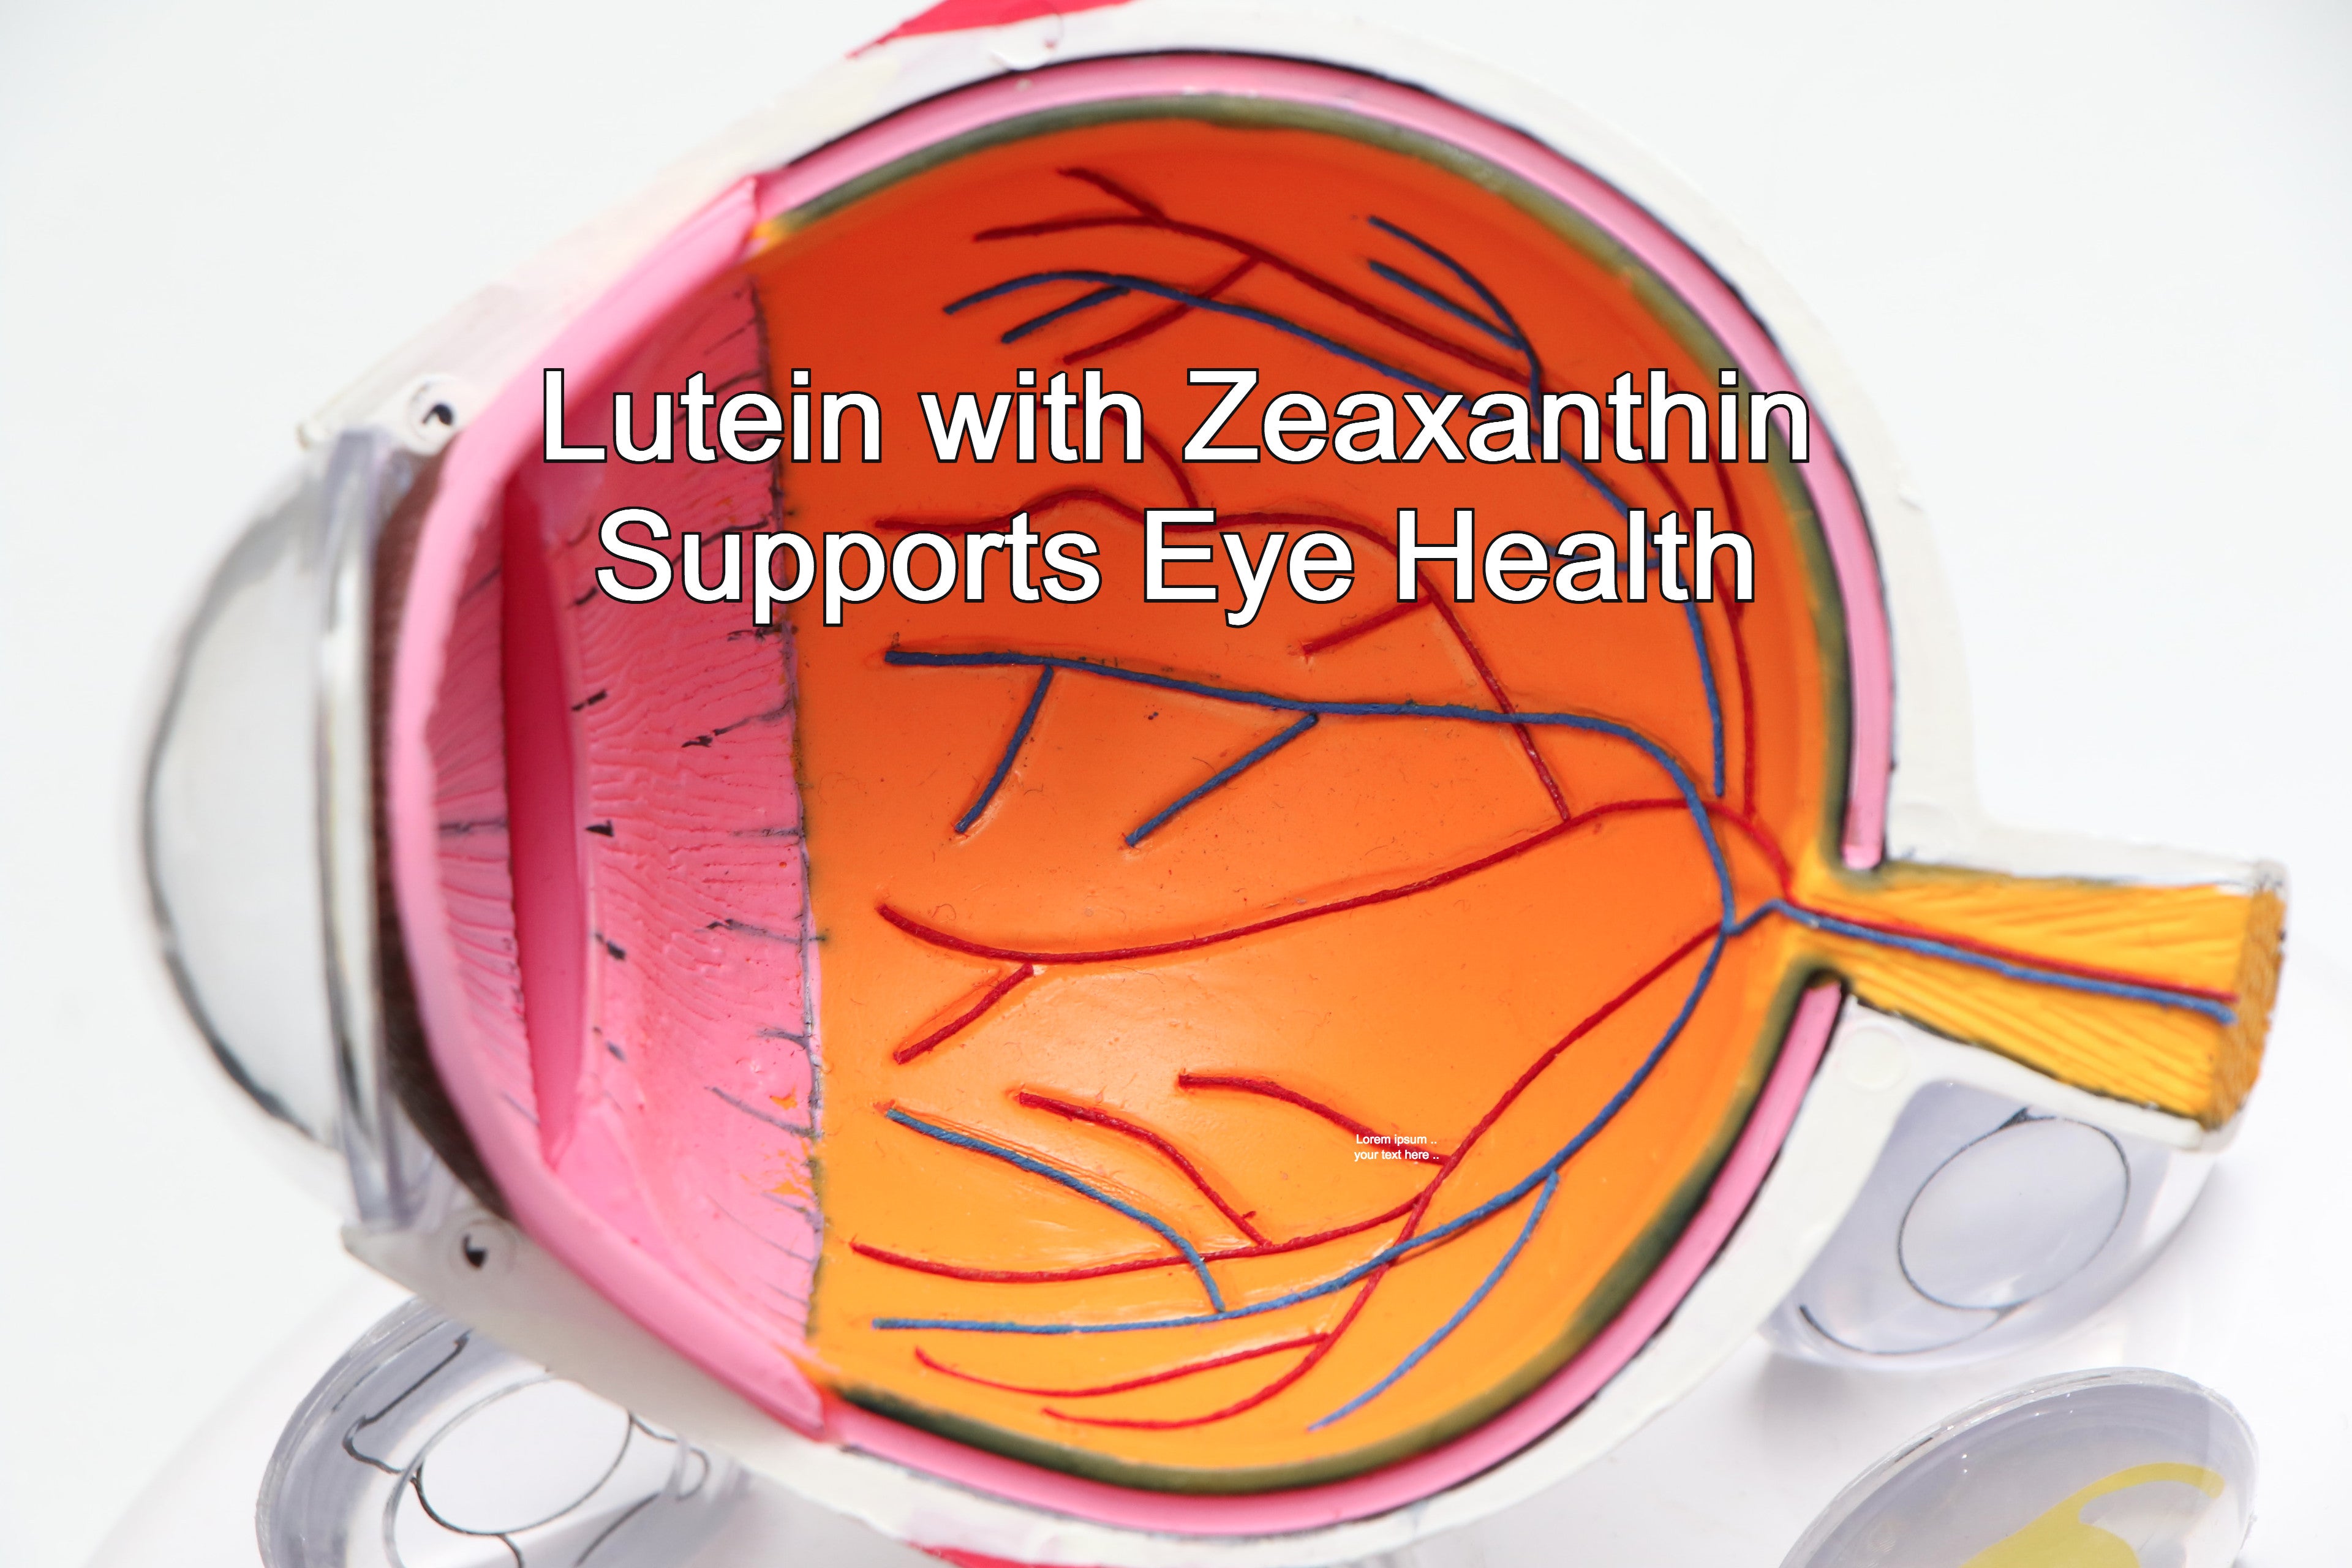 Lutein 20 mg with Zeaxanthin vegetarian, gelatin-free gummies